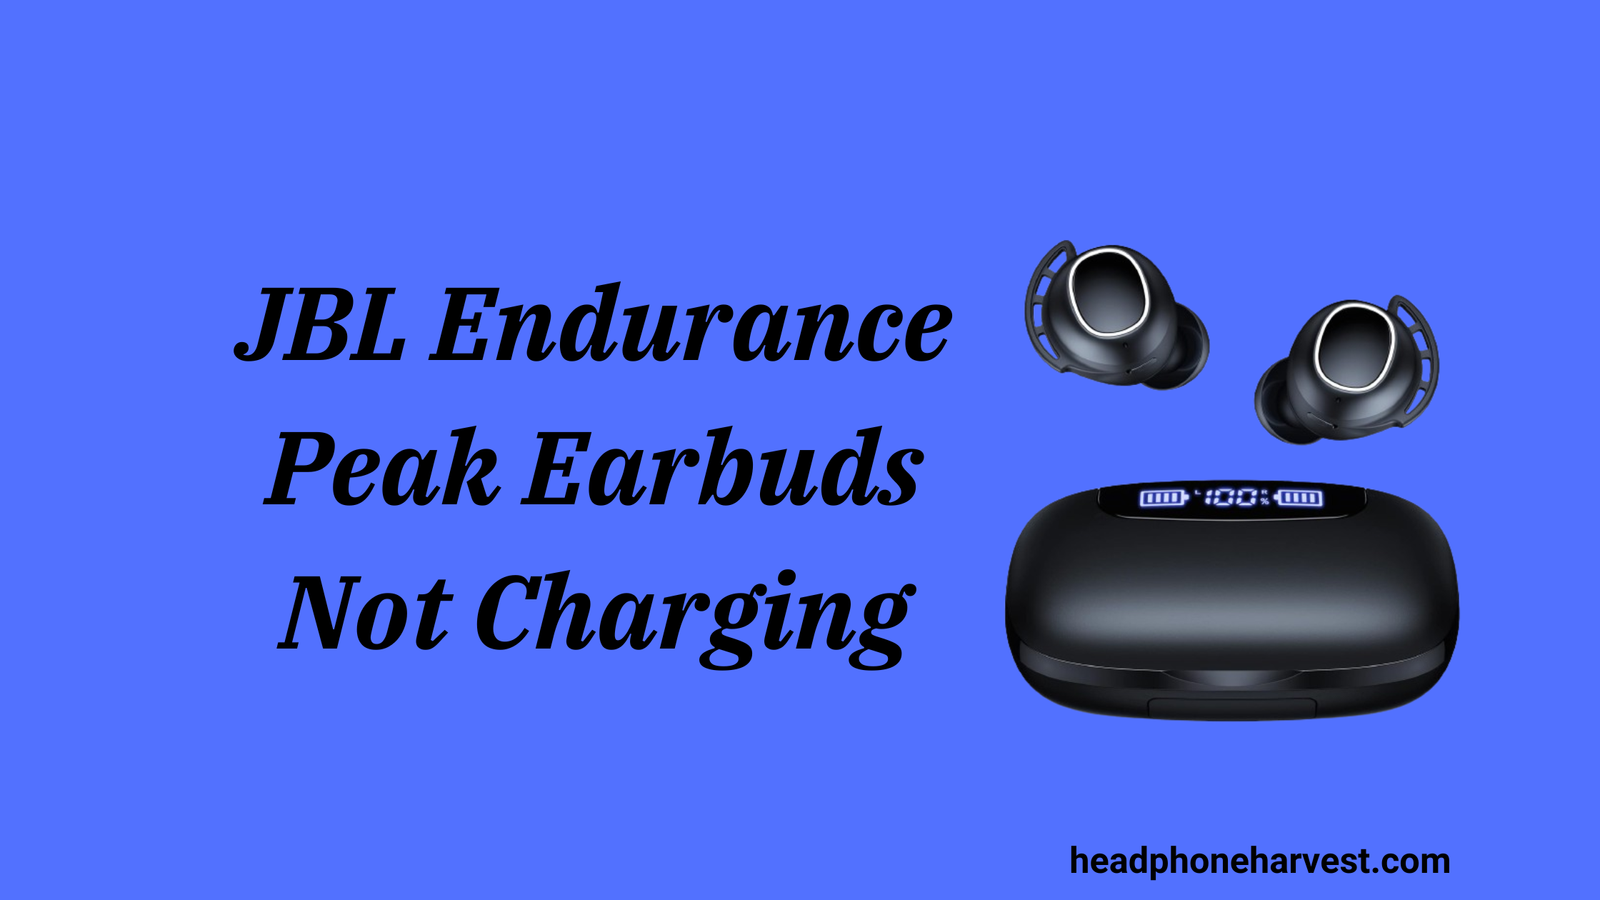 JBL Endurance Peak Earbuds Not Charging